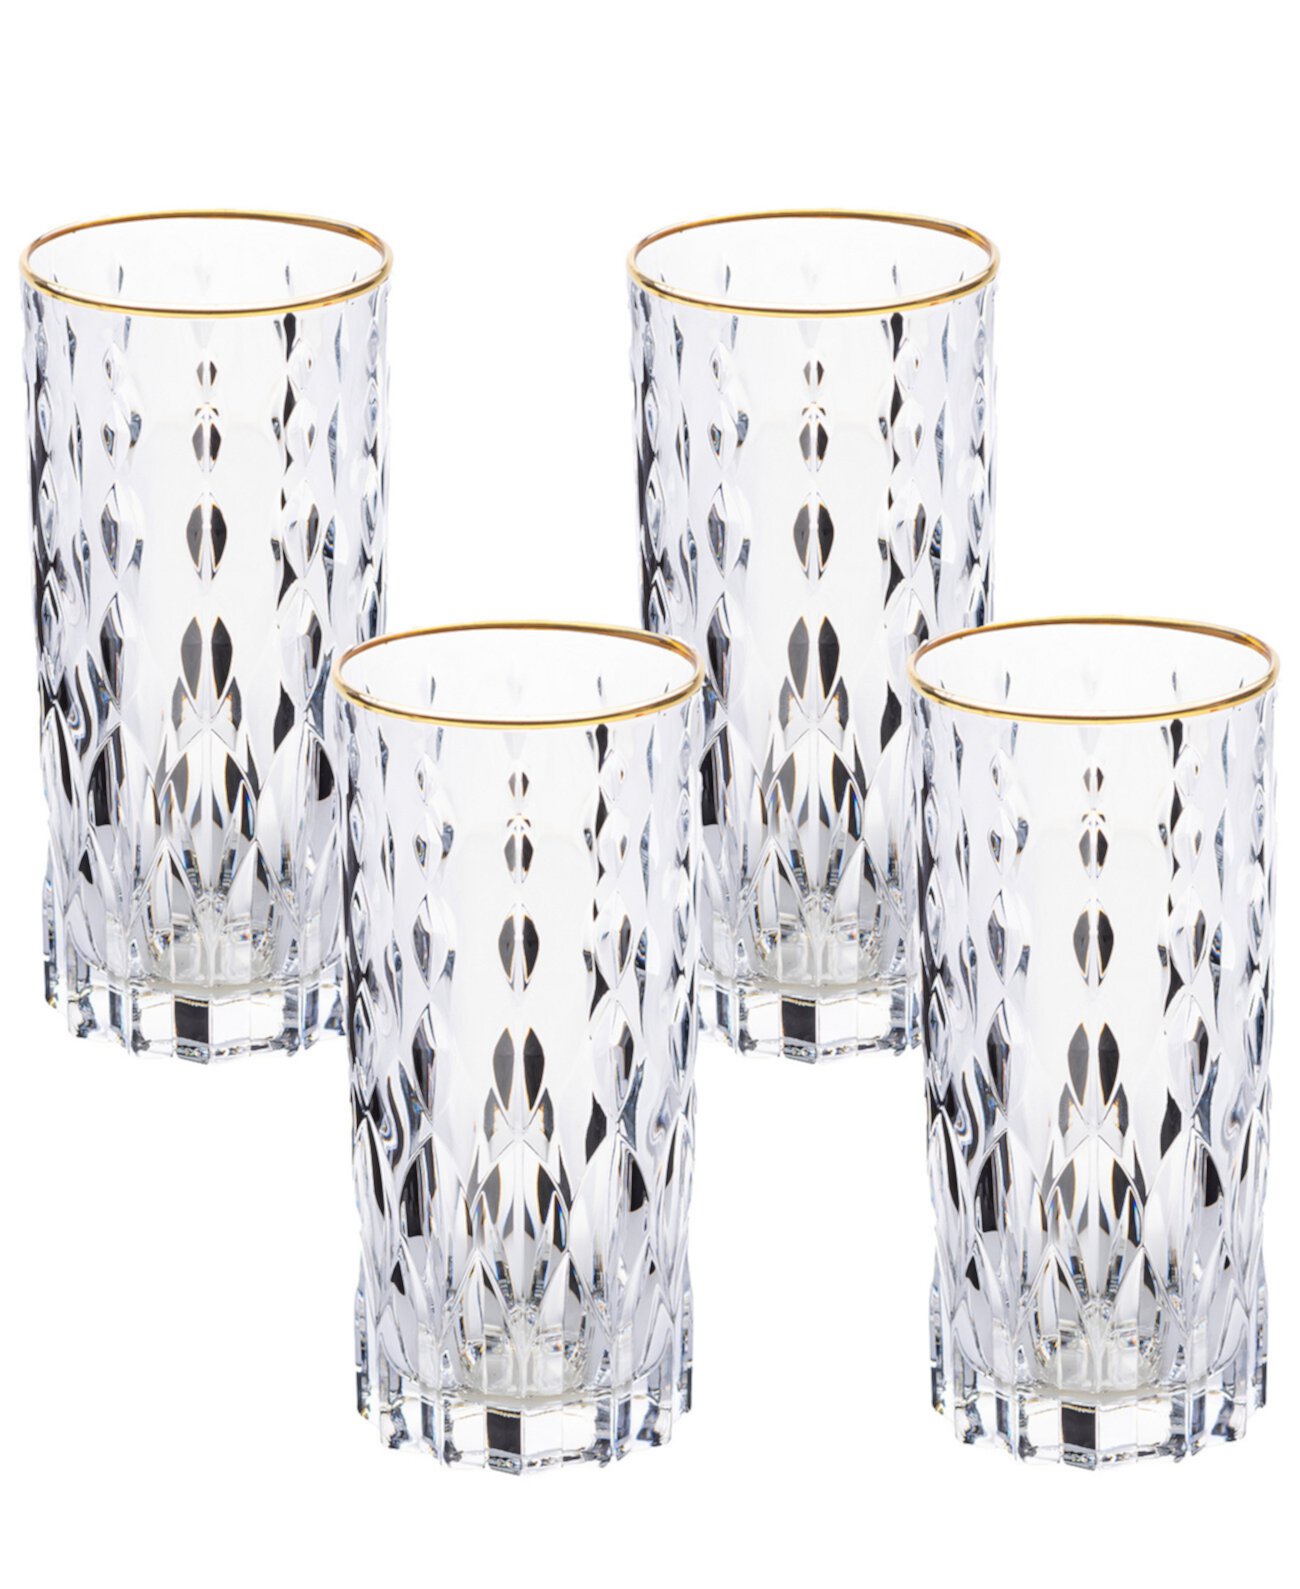 Высокие стаканы Marilyn золотистого цвета, набор из 4 шт. Lorpen